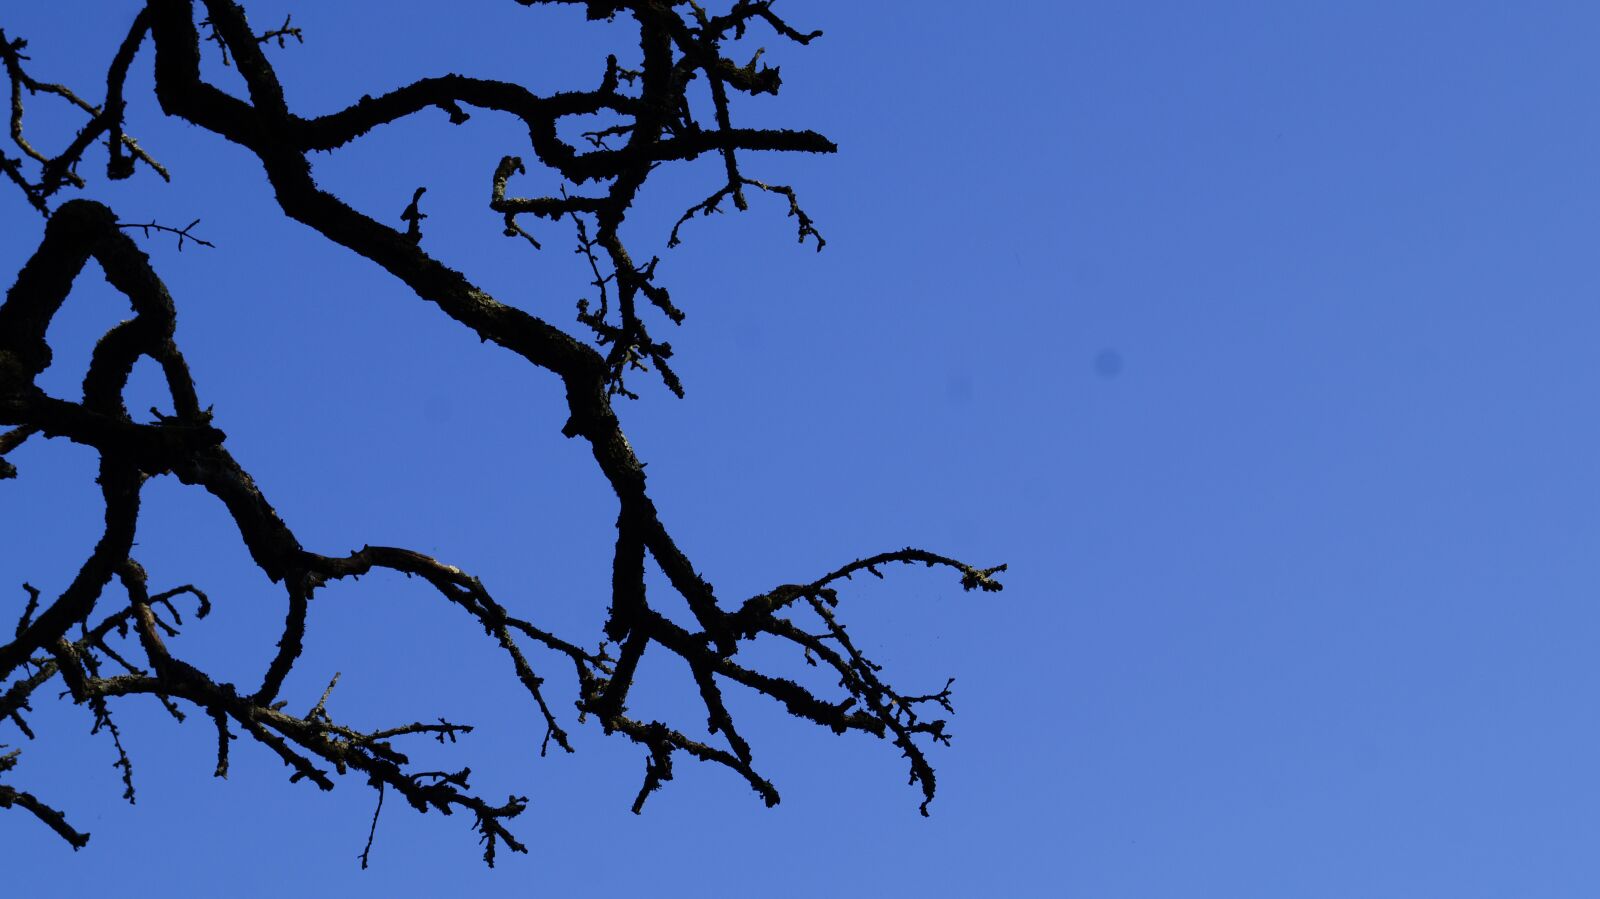 Sony SLT-A58 sample photo. Sky, blue, tree photography